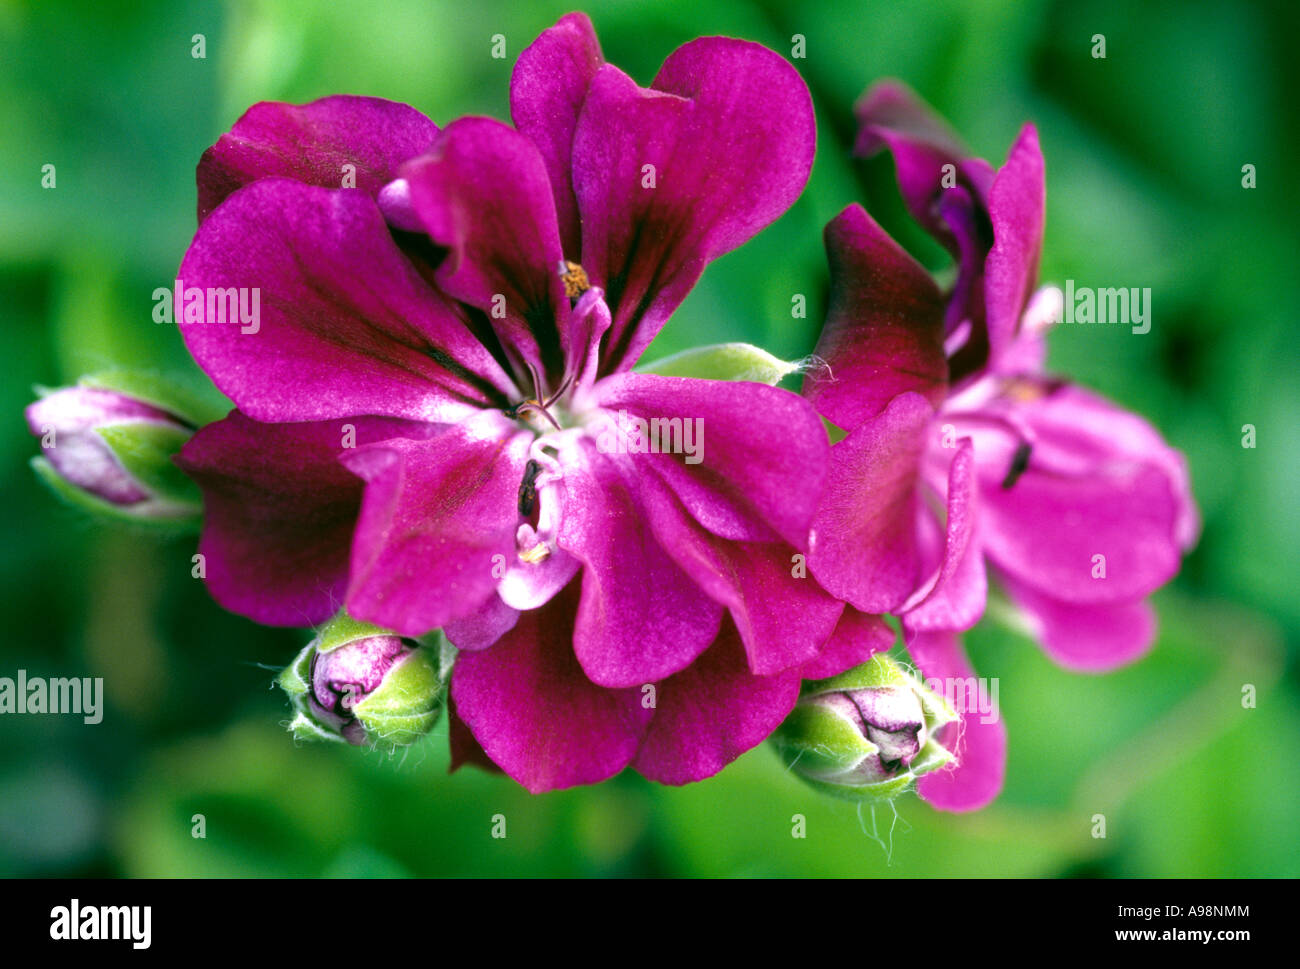 Geranium flowers, geranio, pelargonium close up corolla purple petals Stock Photo